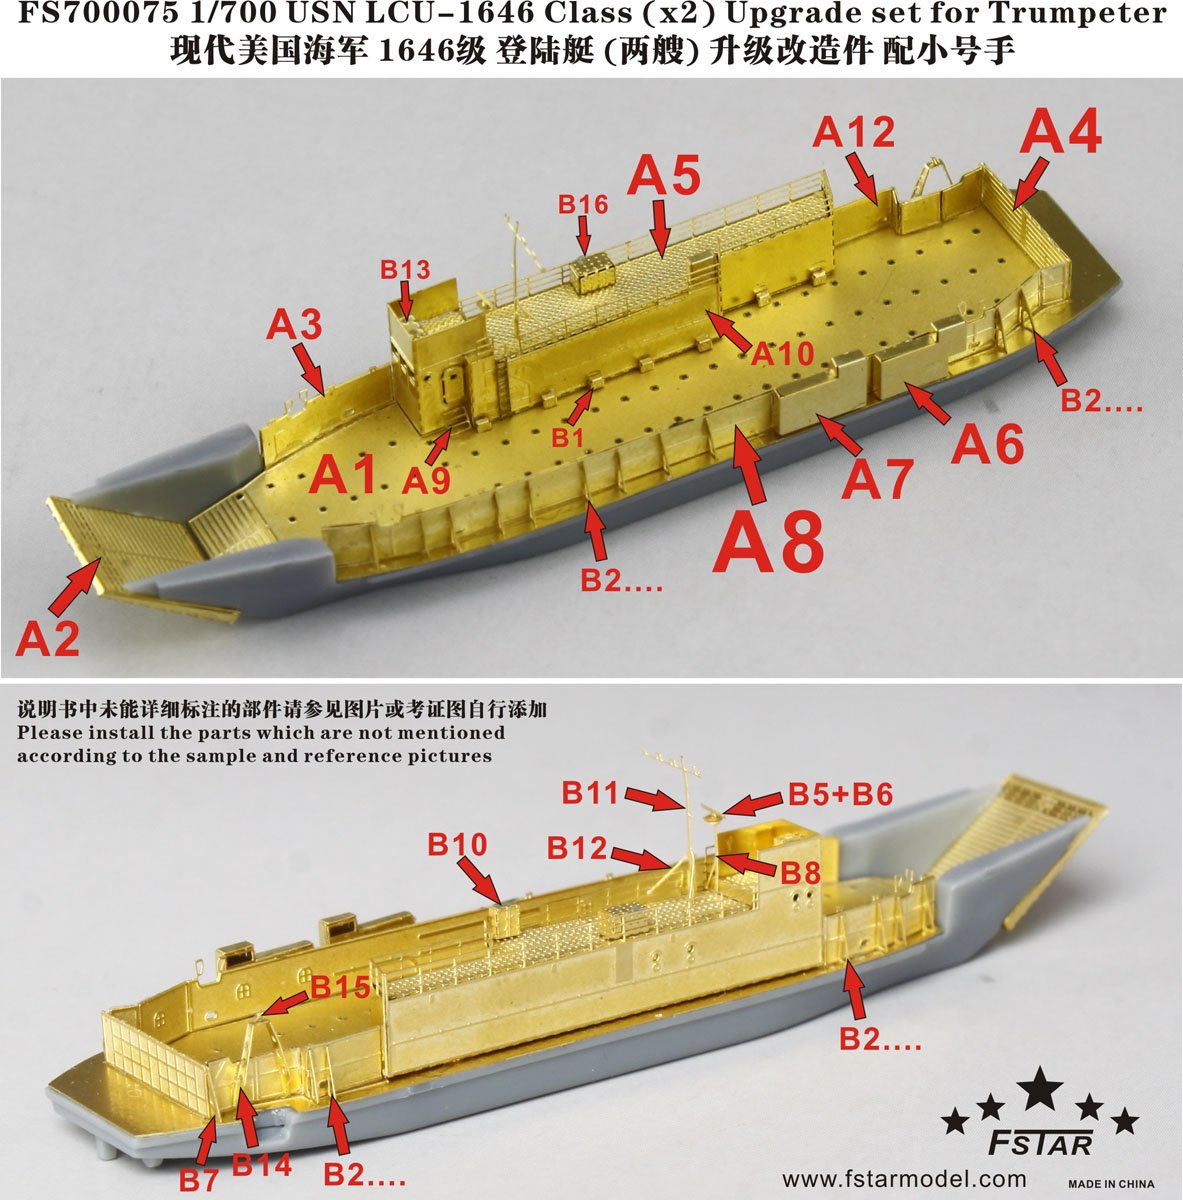 1/700 现代美国海军1646级登陆艇(两艘)细节改造件(配小号手) - 点击图像关闭